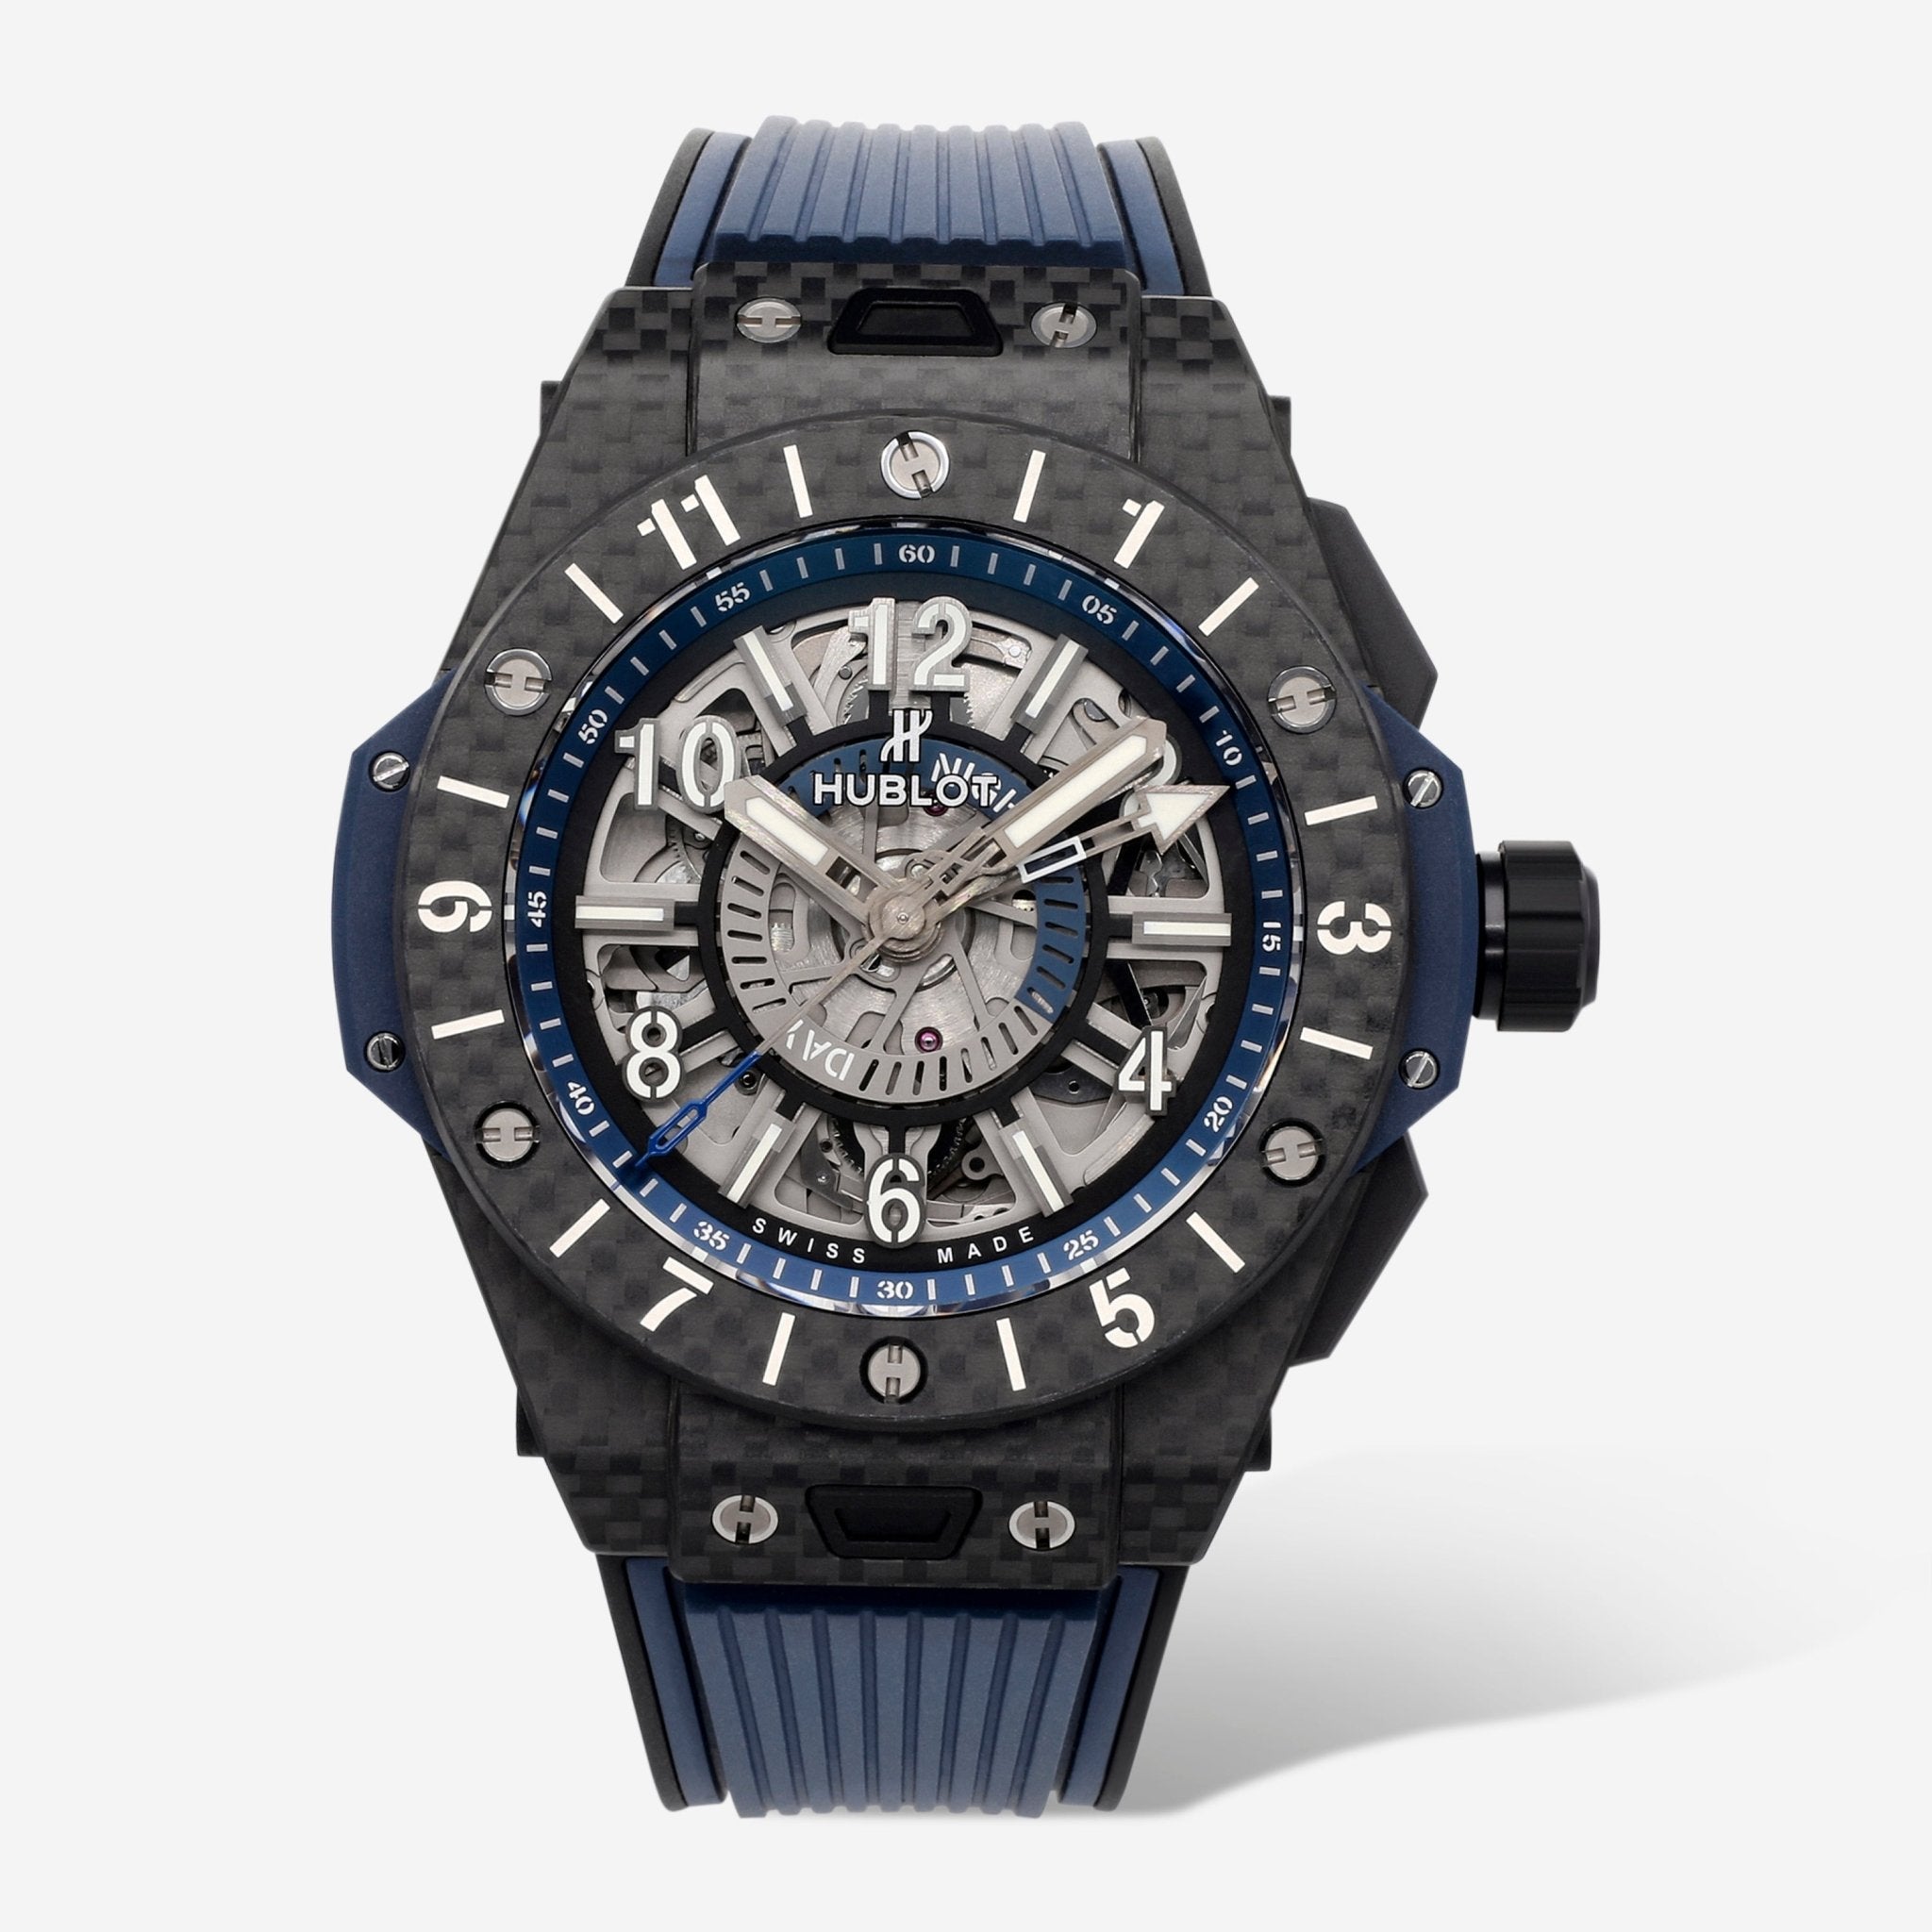 Hublot Big Bang Unico GMT 45mm Carbon Fiber Automatic Men's Watch 471.QX.7127.RX - THE SOLIST - Hublot